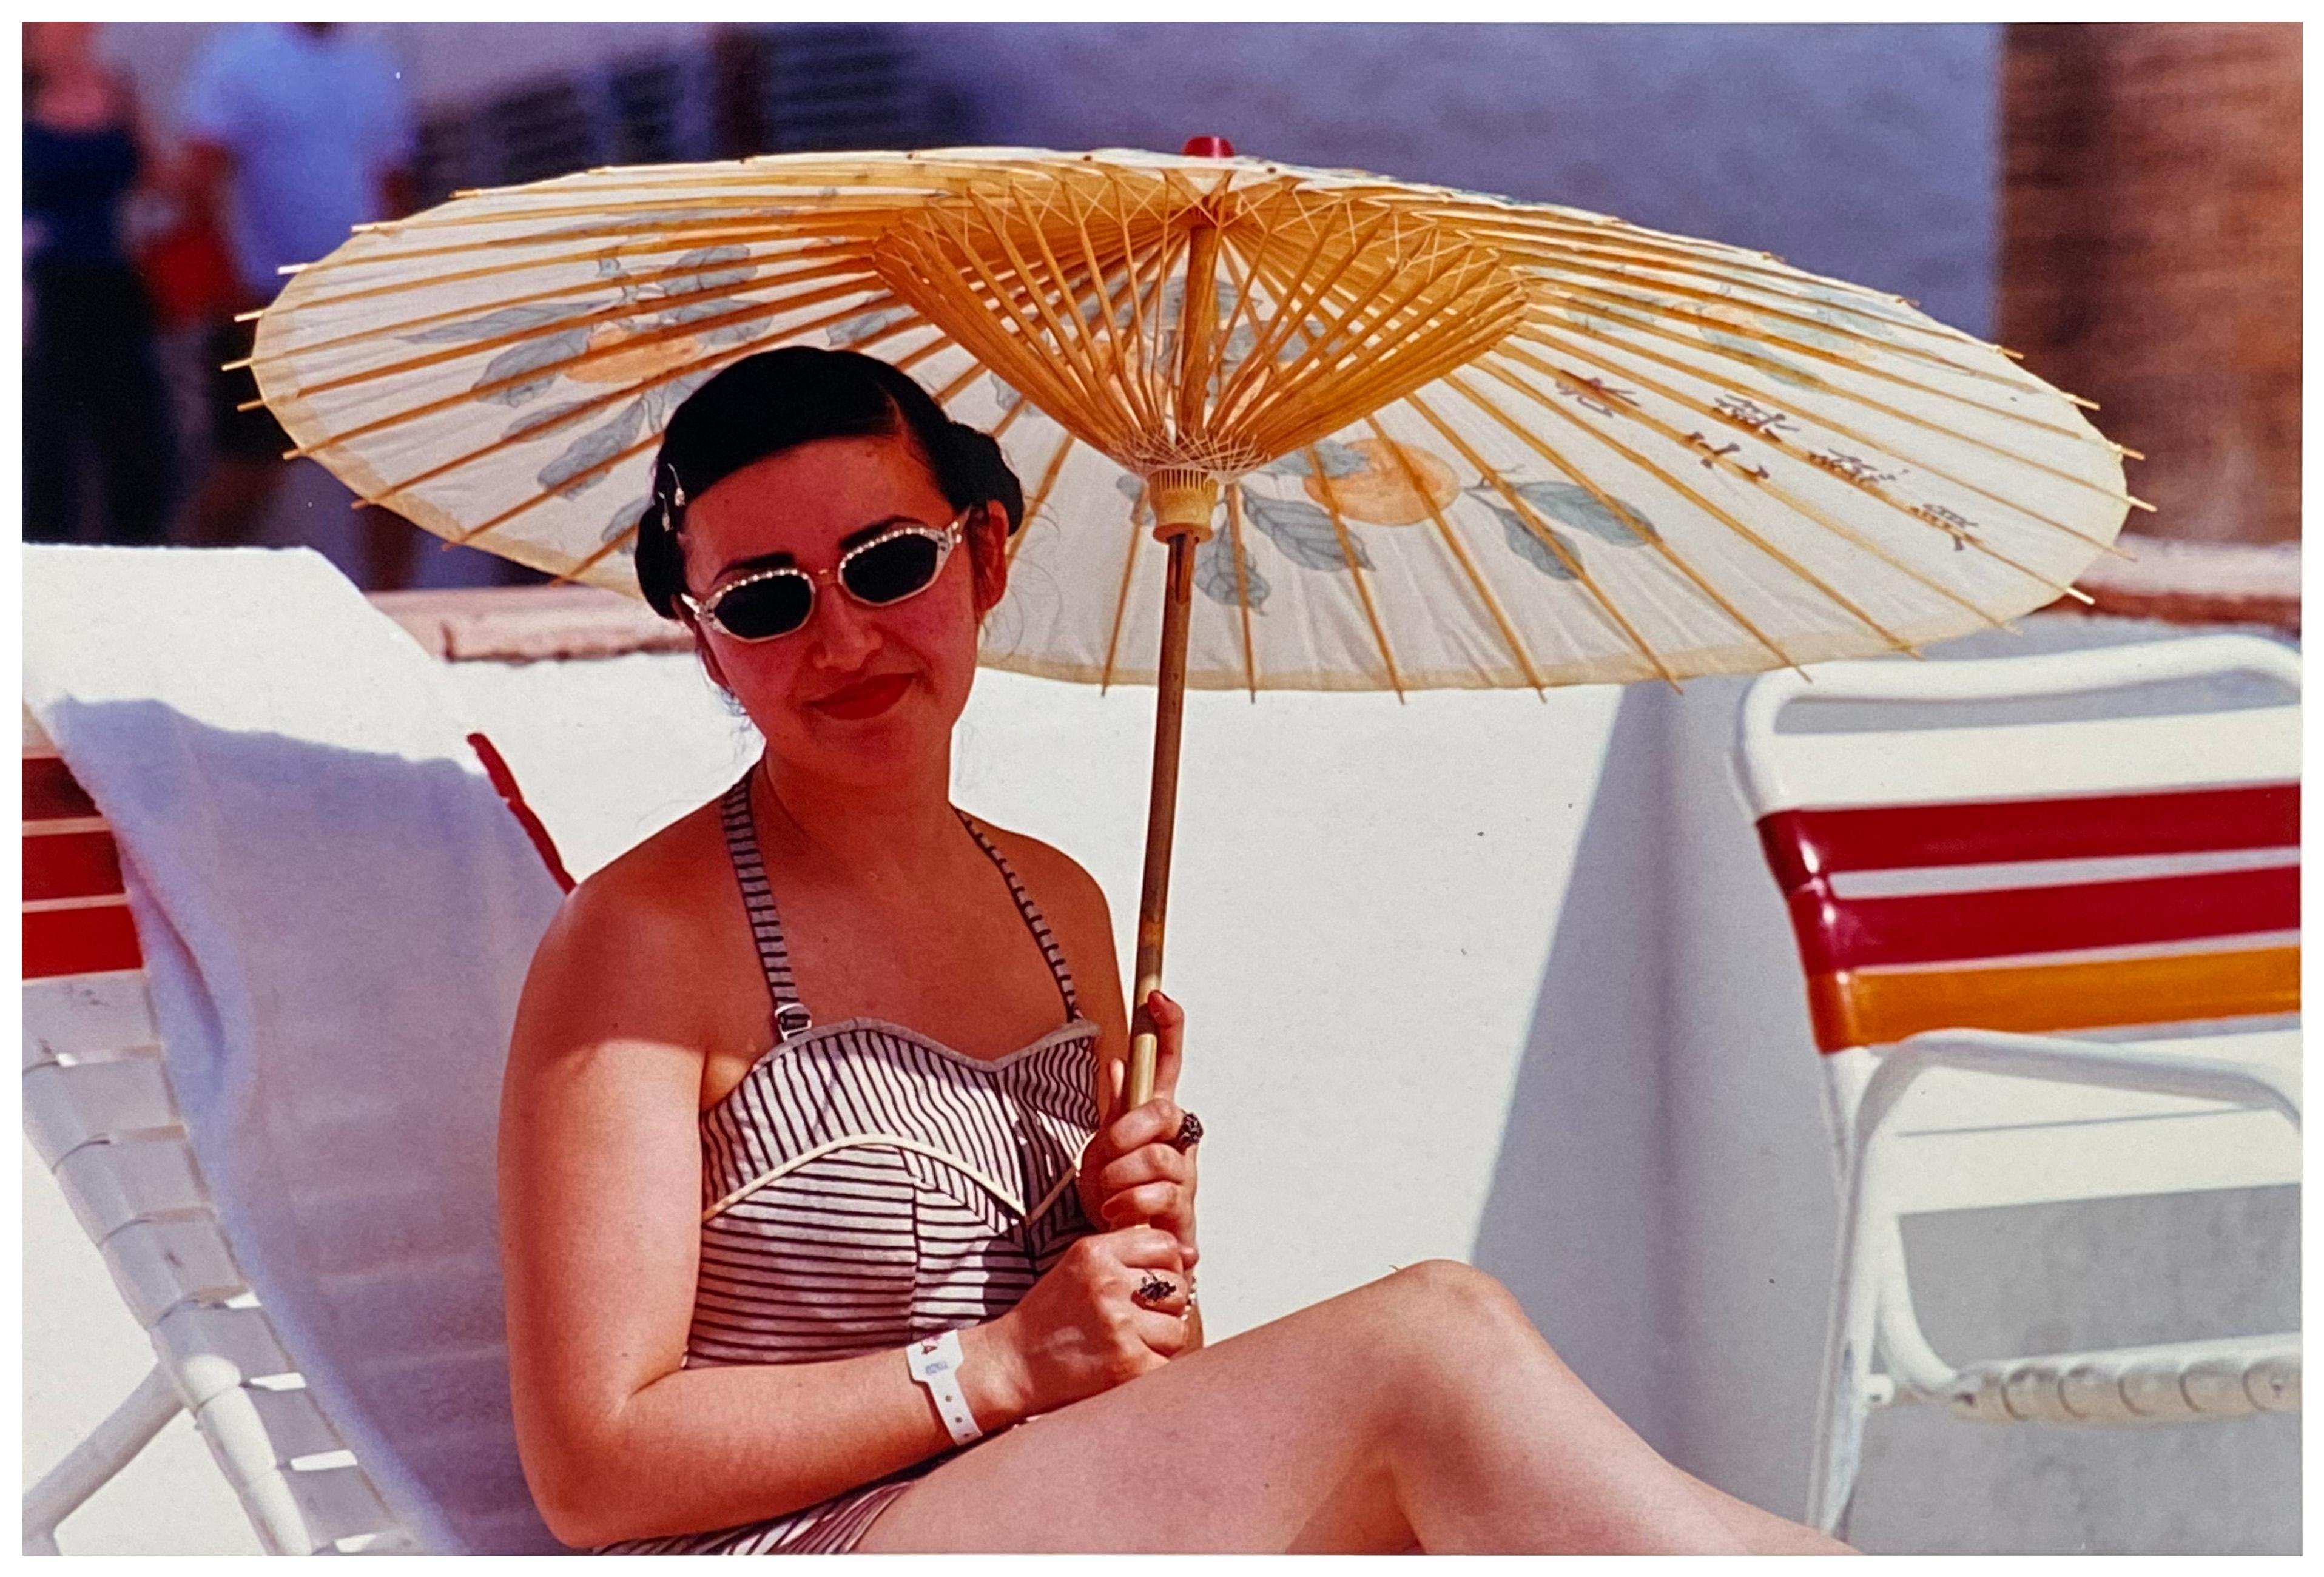 Vintage Poolside, Las Vegas - Zeitgenössische Porträt-Farbfotografie